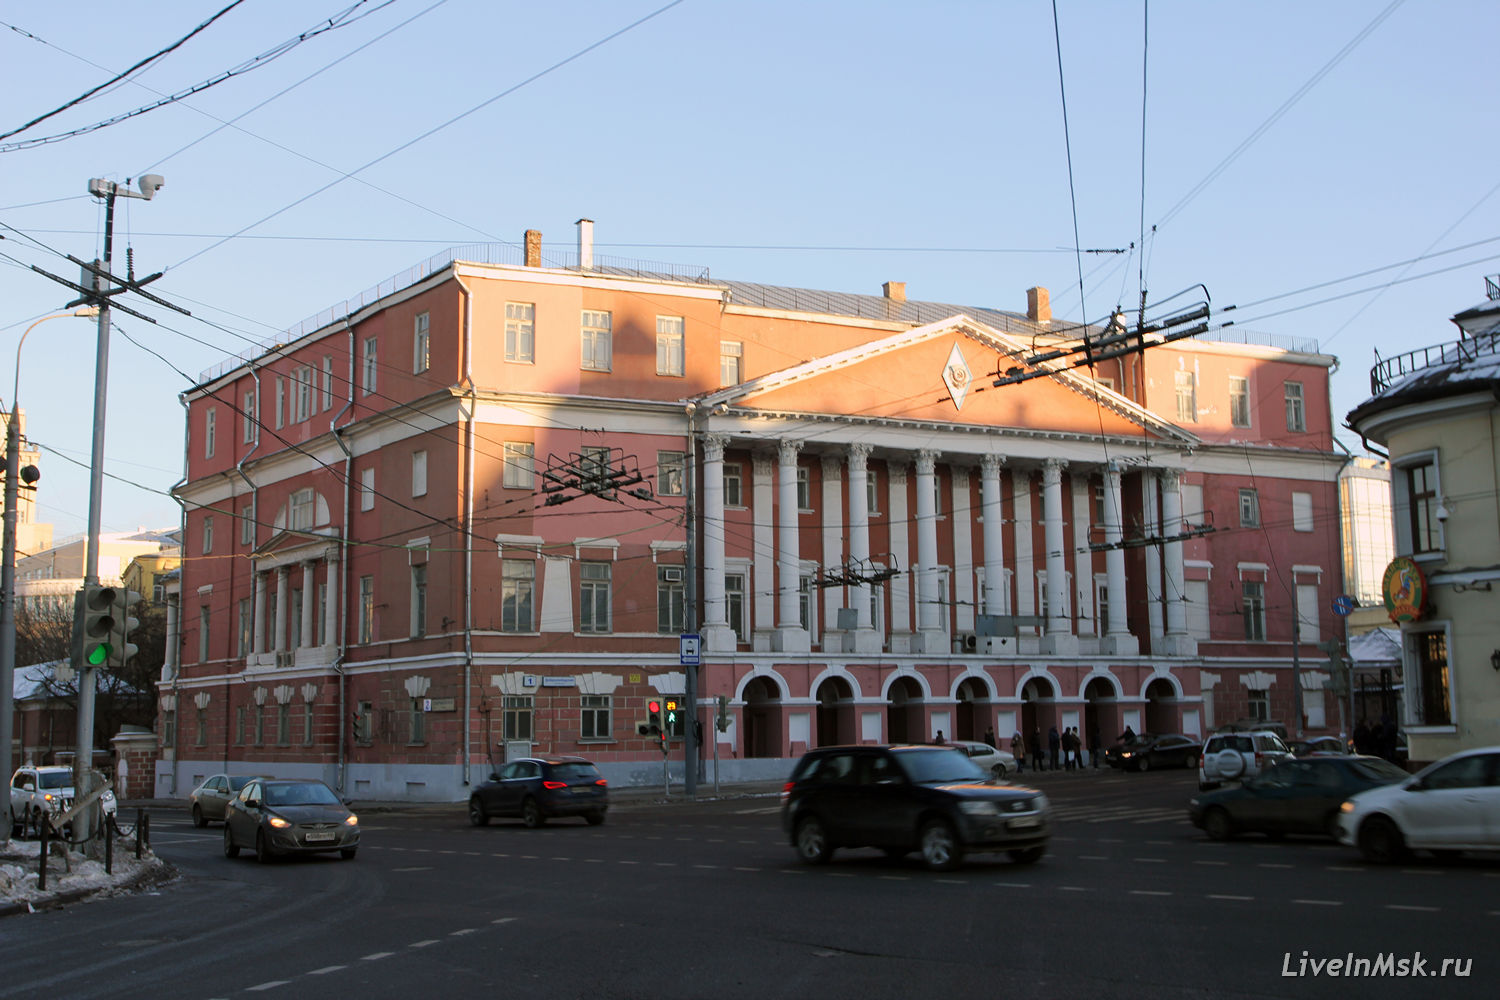 Дом Мусина-Пушкина на Разгуляе, фото 2015 года